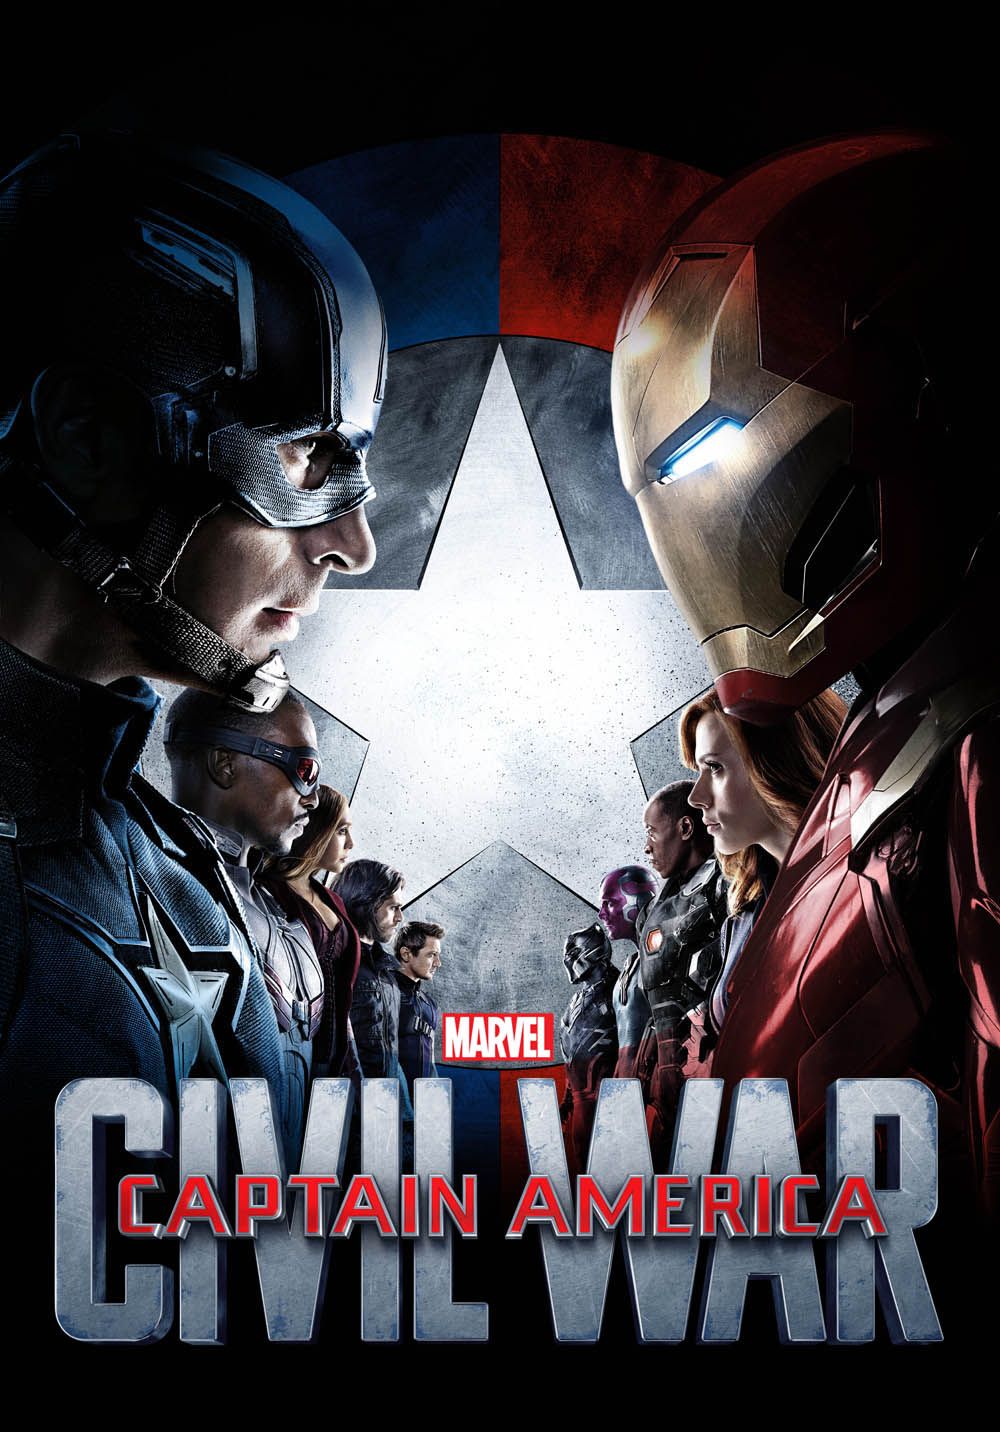 Civil_War_Alternate_poster.jpg